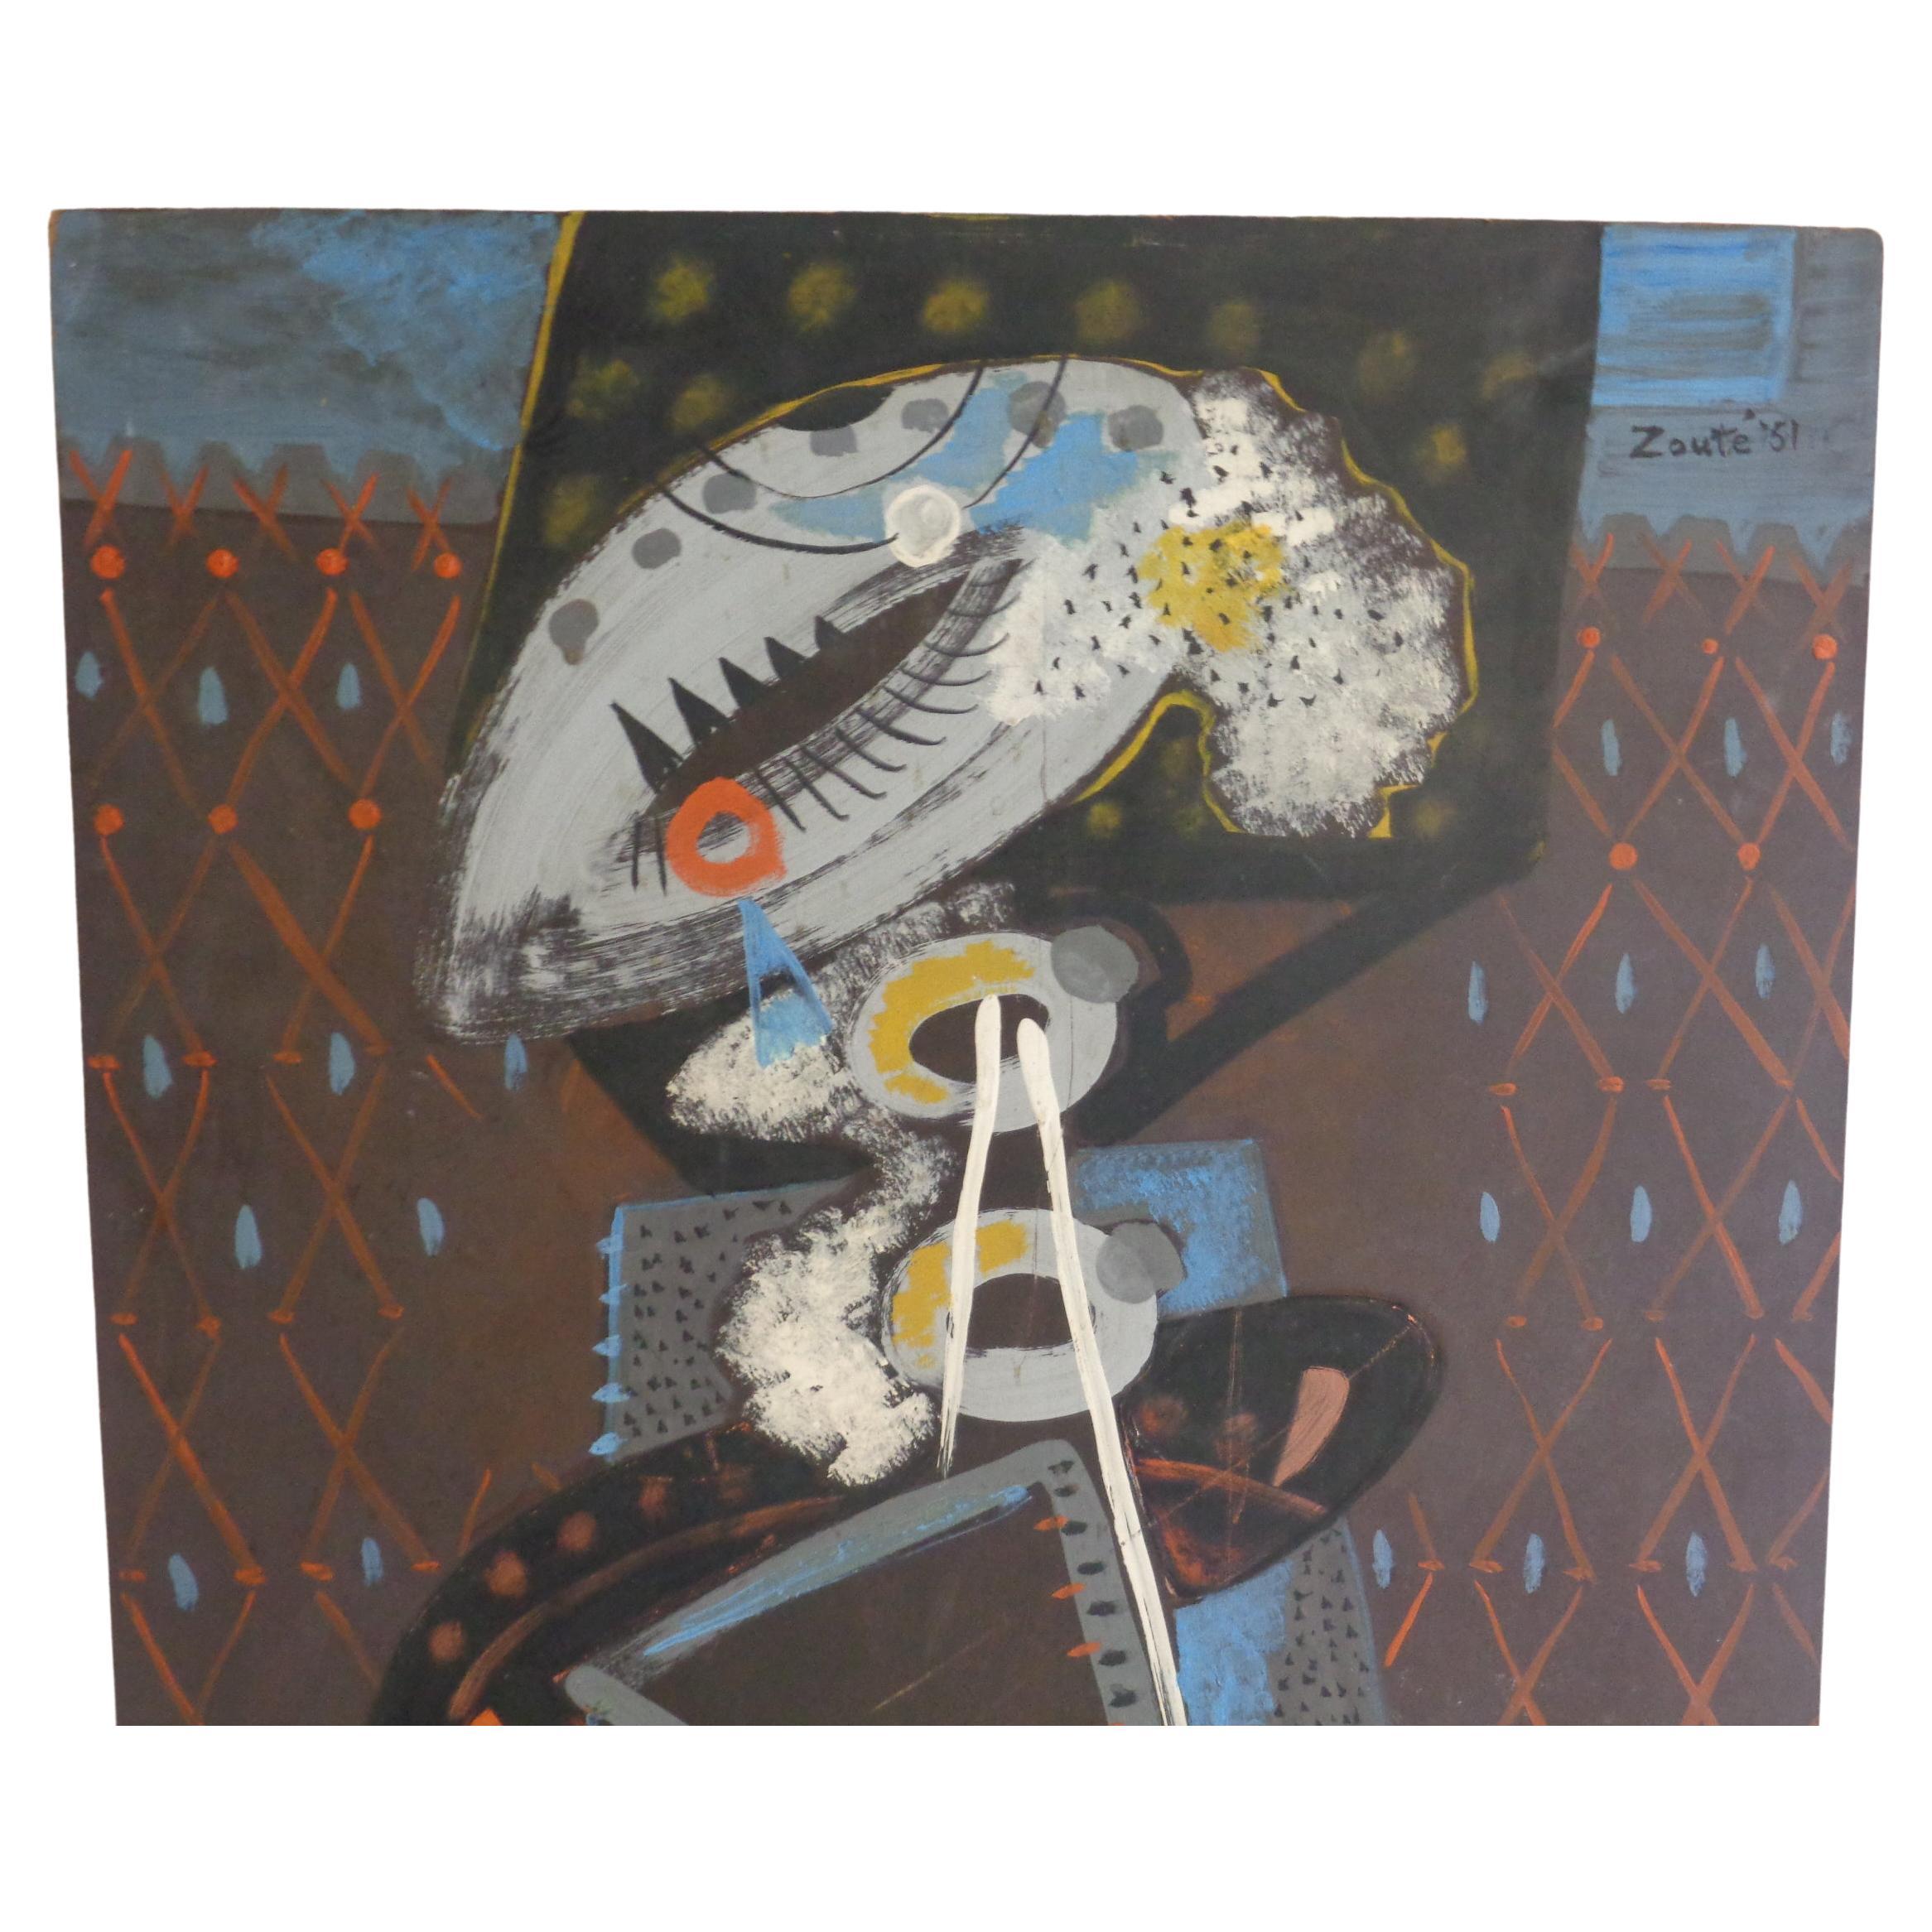 Abstraktes Ölgemälde auf Masonit - weibliche Figur mit schönen kräftigen Farben ( wahrscheinlich Thelma - die Frau von Zoute ) Leon Salter ( 1903 - 1976, North Rose NY ) alias Zoute - autodidaktischer Künstler Maler. Er war ein integraler